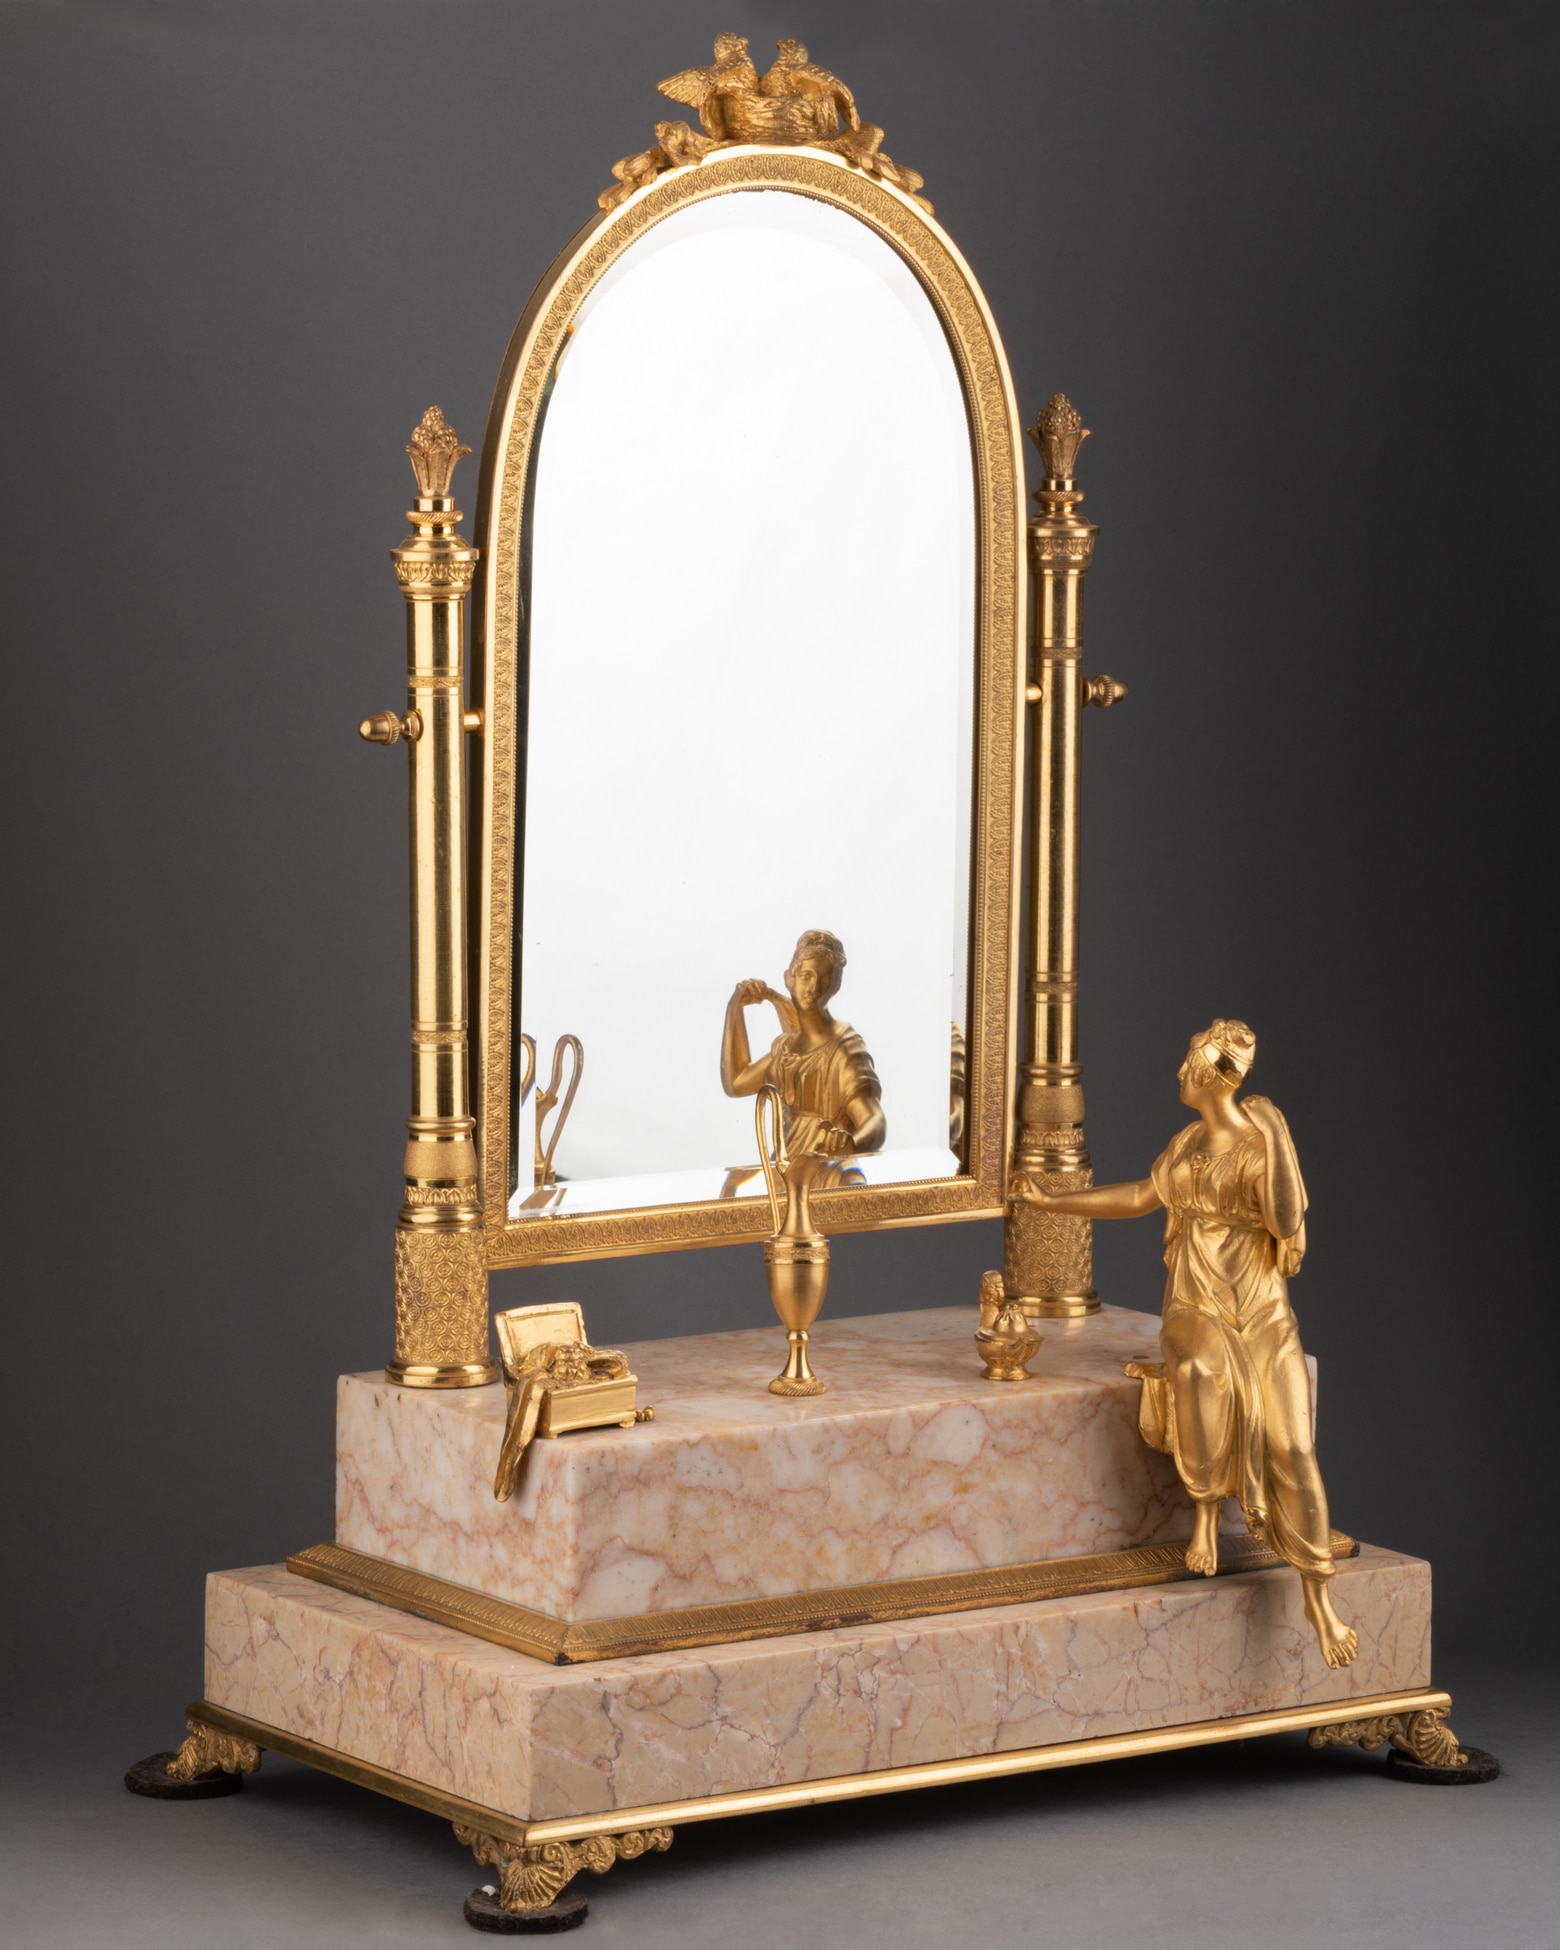 Miroir psyché d’époque Empire, début XIXe siècle